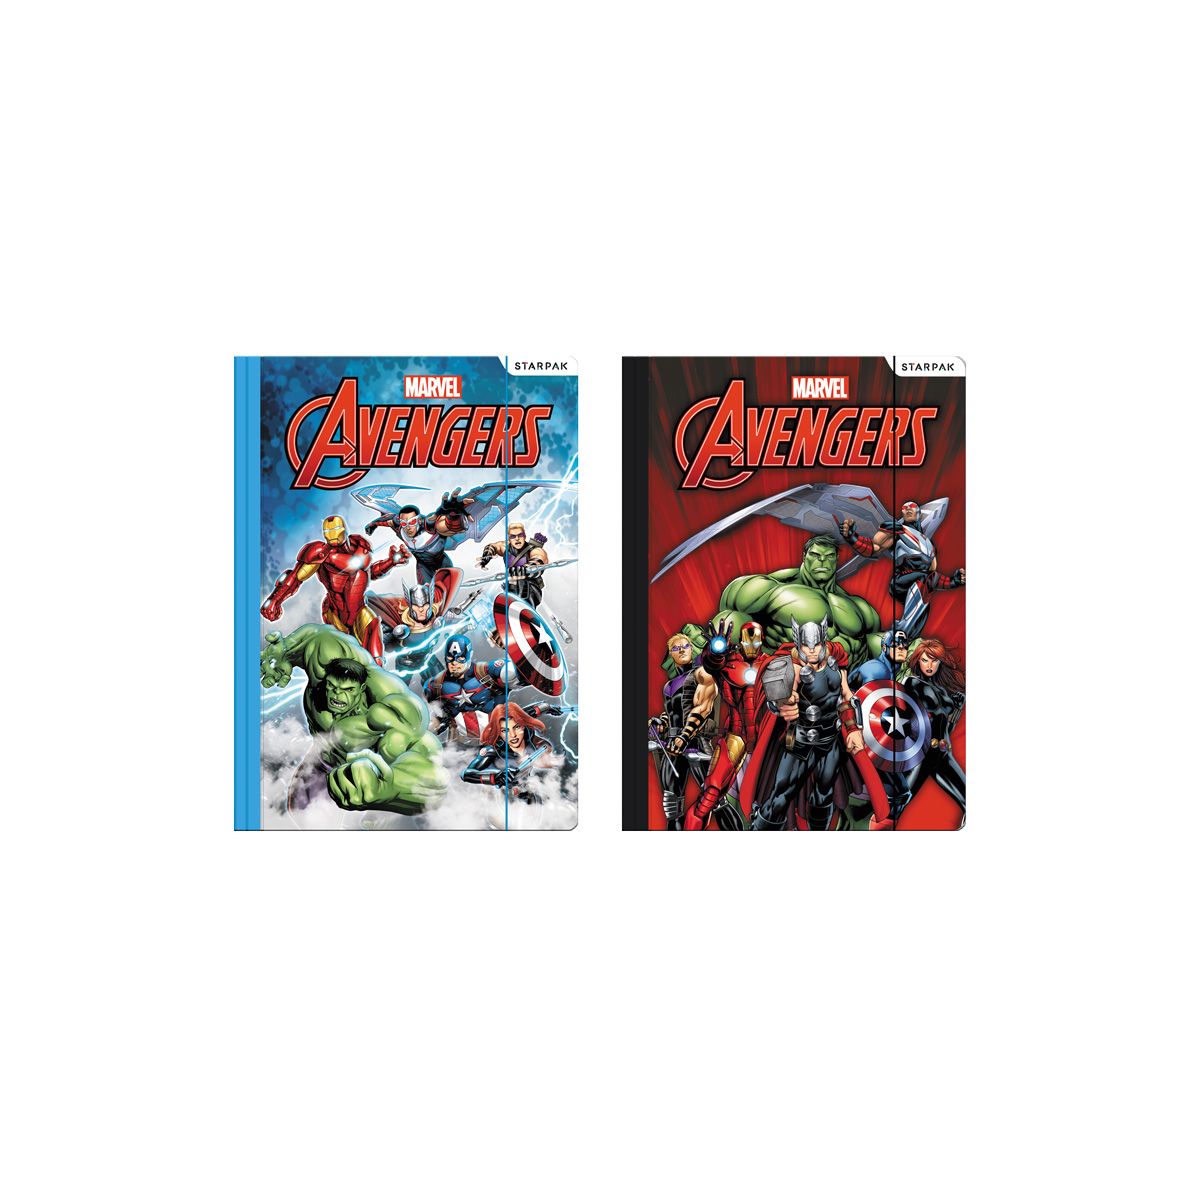 Teczka kartonowa na gumkę Avengers Starpak (321803)